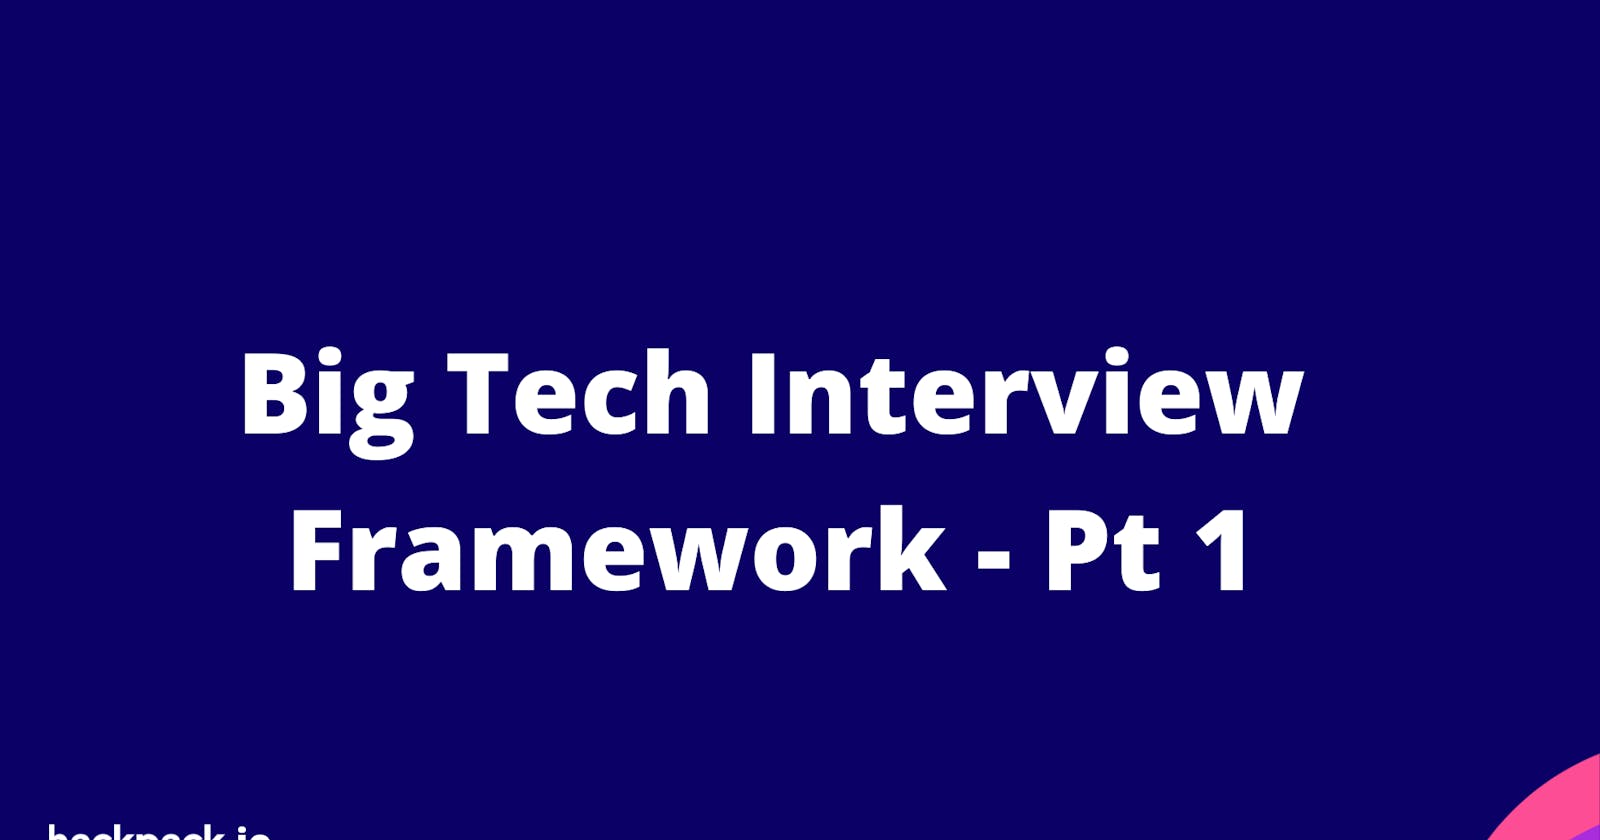 The Big Tech Coding Interview Framework - Pt 1. Inspect